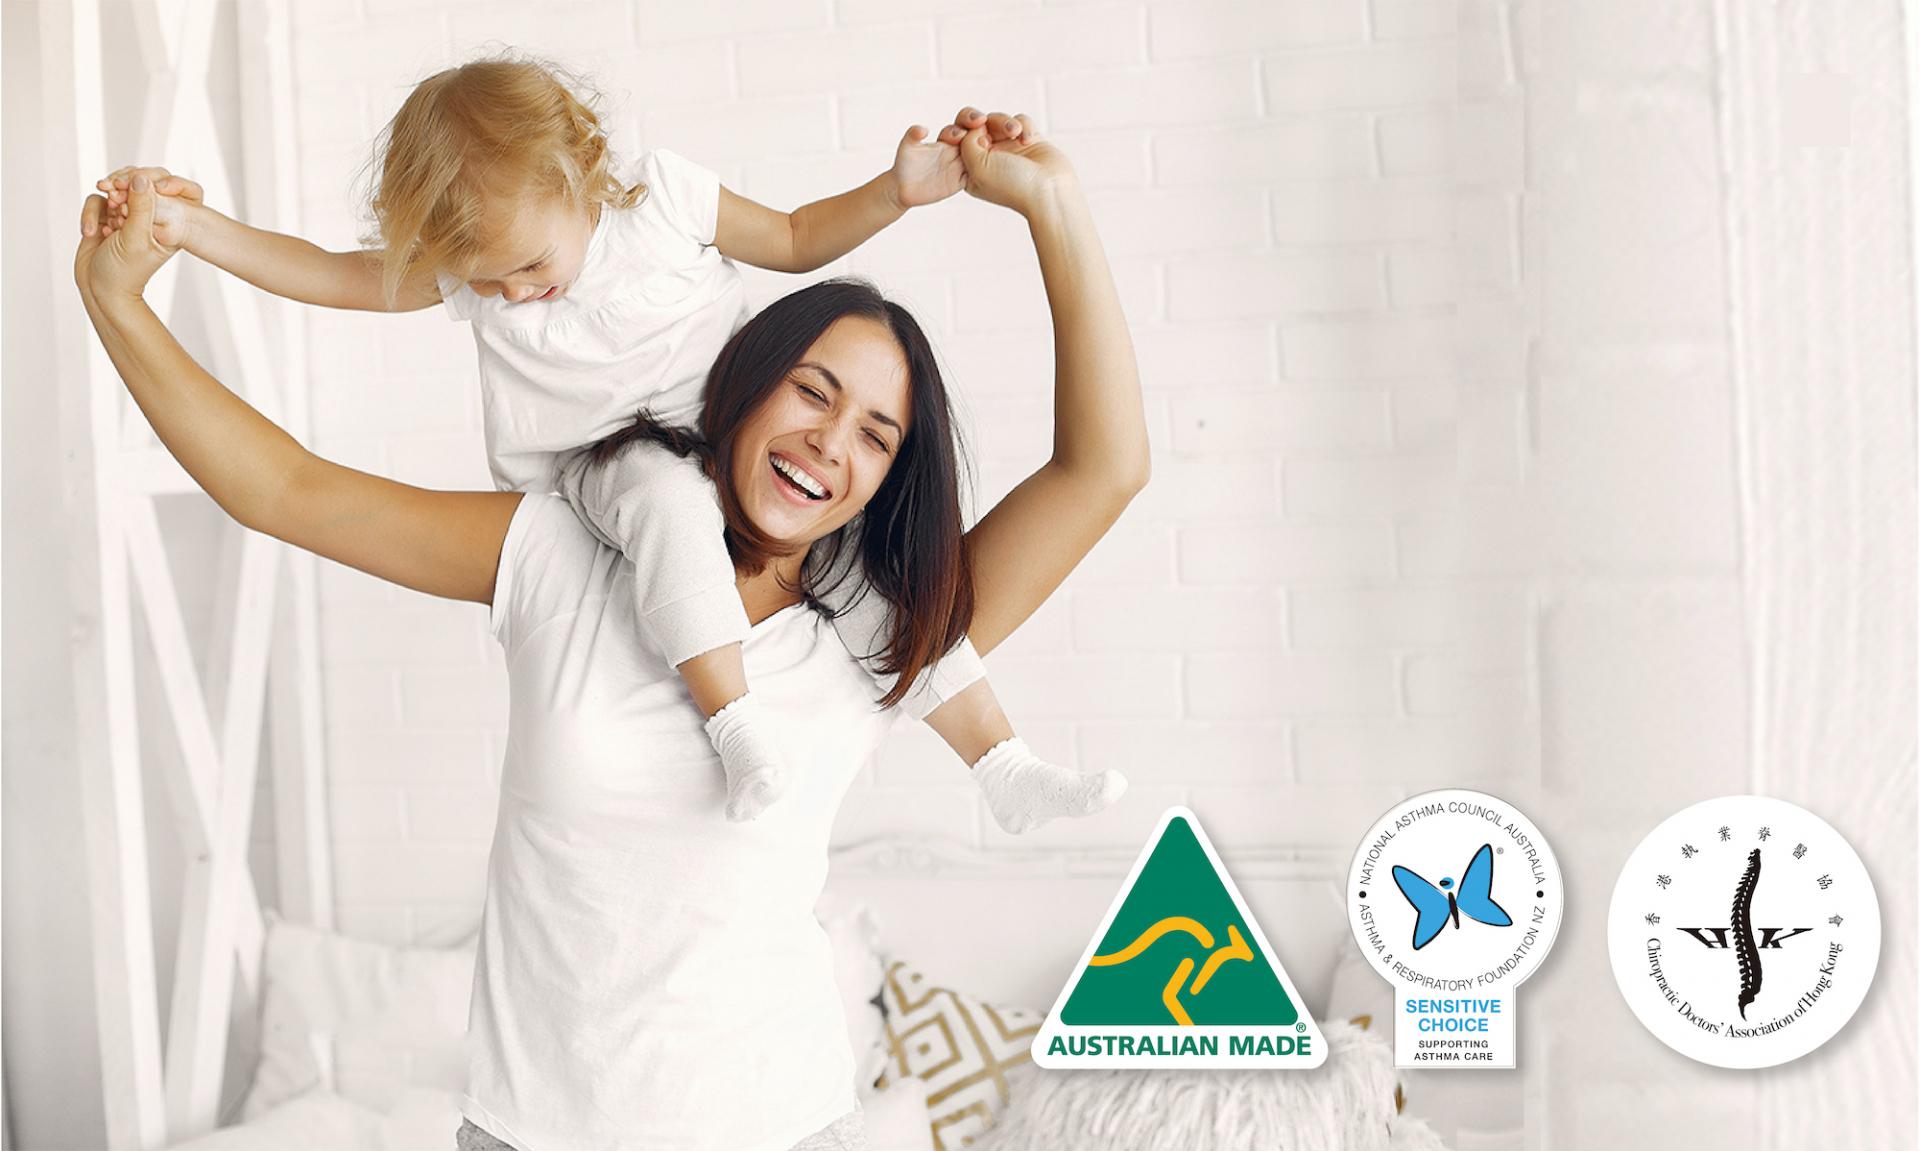 澳洲床褥品牌「EMMAS 澳美斯」以防敏物料及先進技術，締造完美睡眠體驗